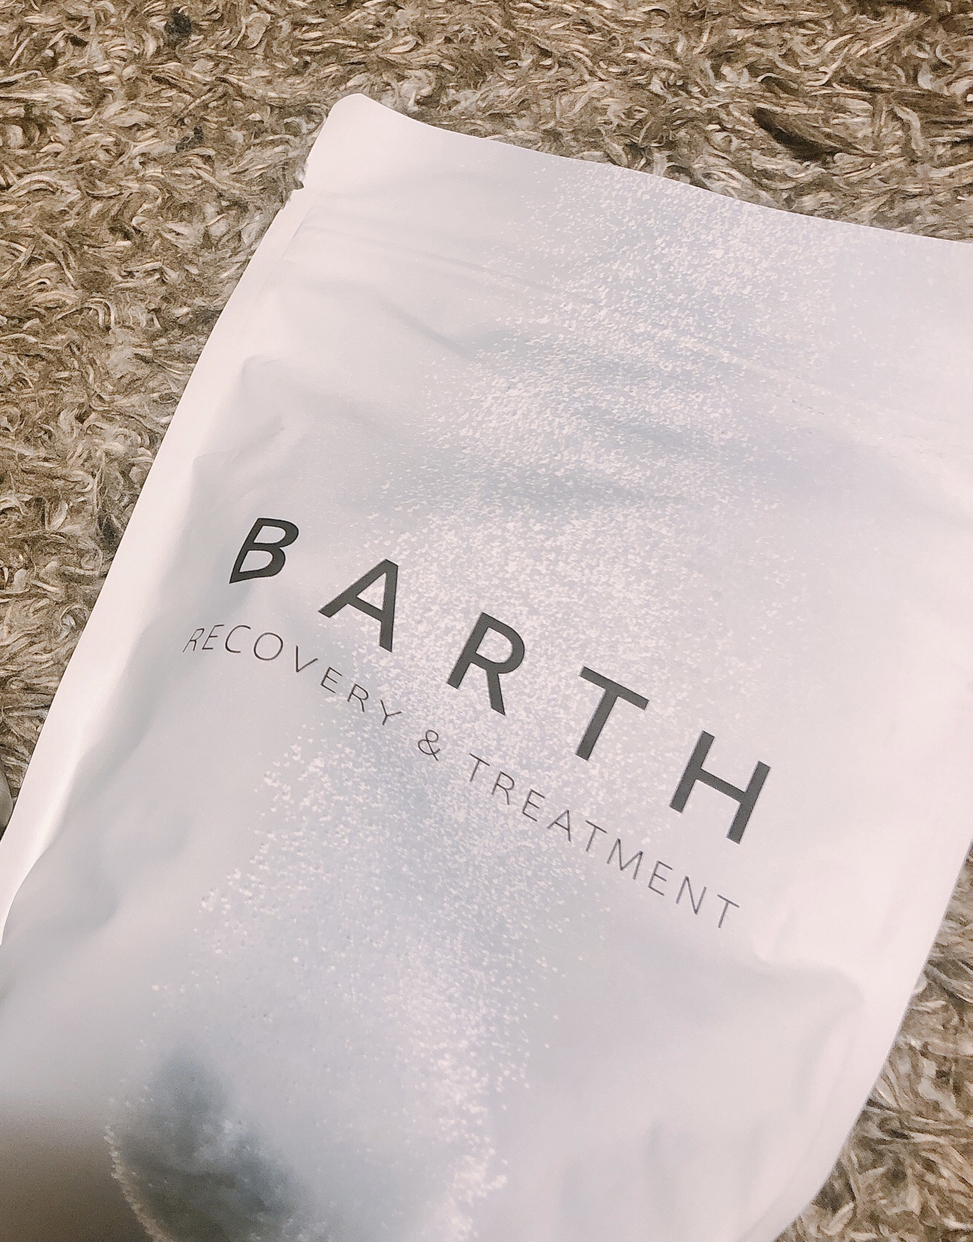 BARTH(バース) 中性重炭酸入浴剤を使ったairiさんのクチコミ画像1